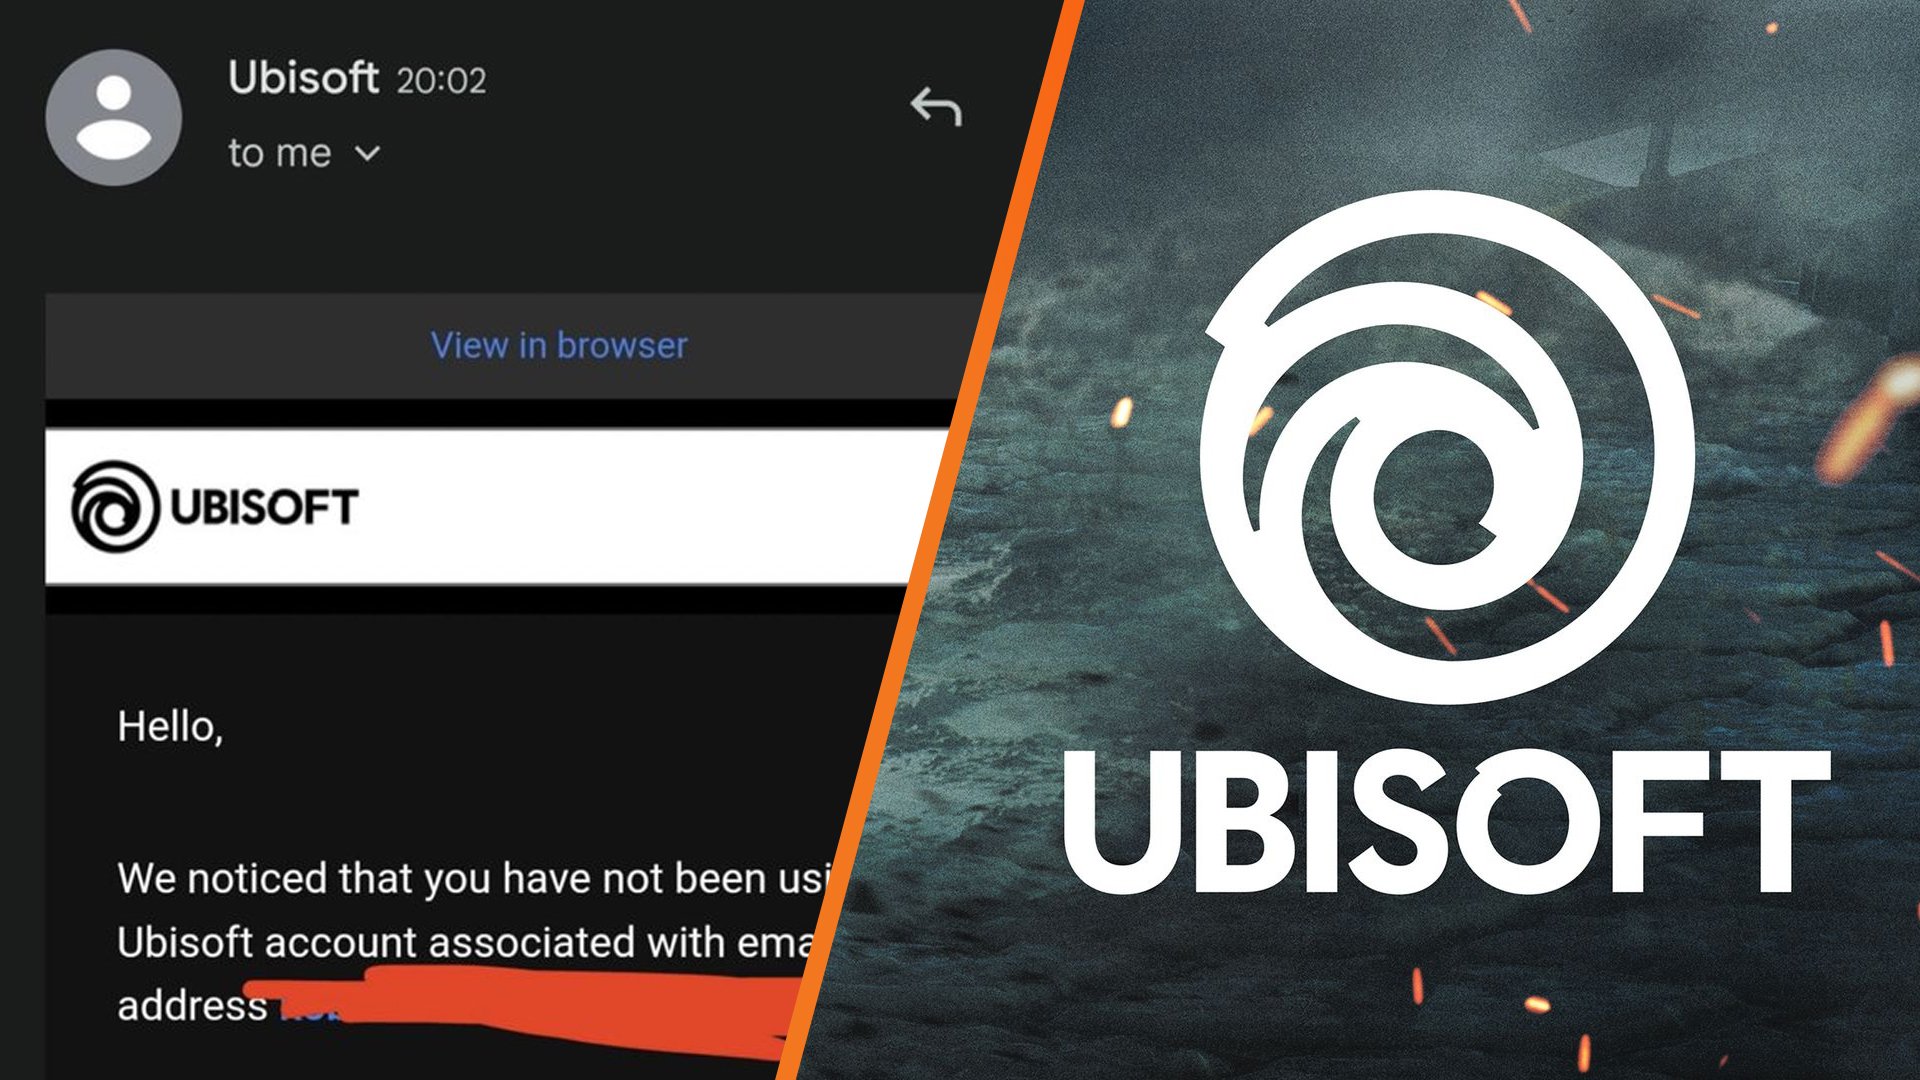 Ubisoft encerra contas “não utilizadas” e desativa acesso a jogos comprados